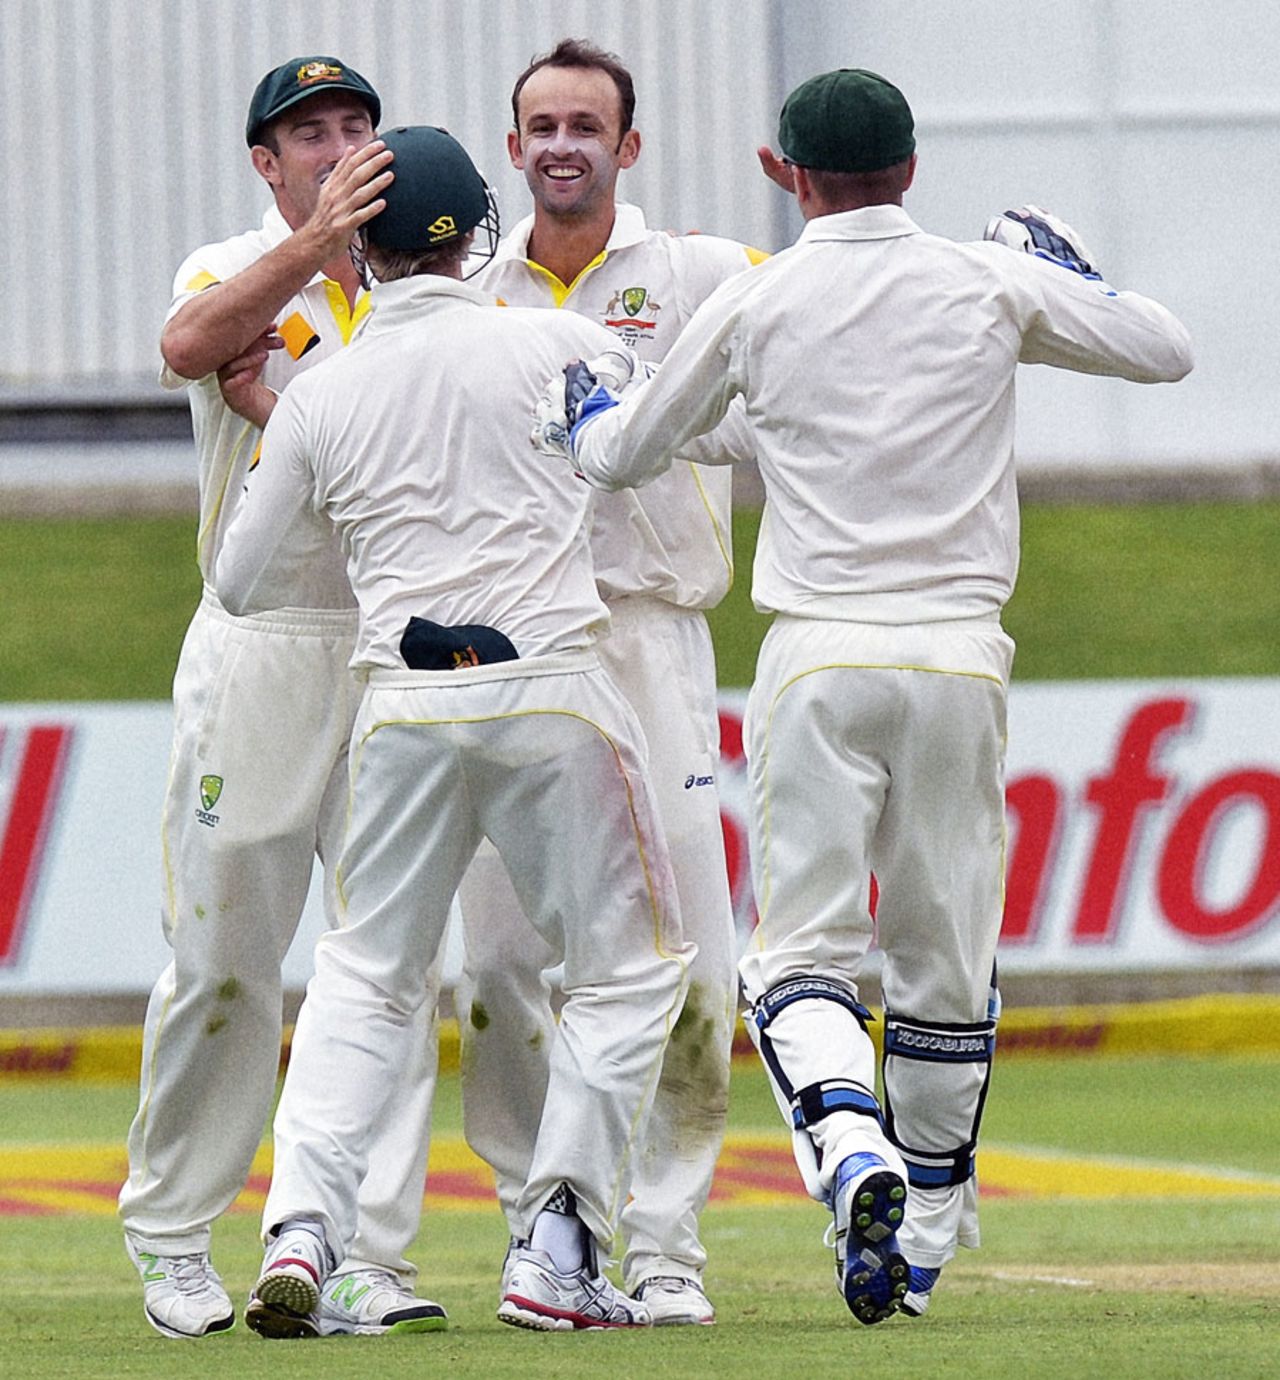 Nathan Lyon celebrates after dismissing Faf du Plessis for 55, South Africa v Australia, 2nd Test, Port Elizabeth, 1st day, February 20, 2014